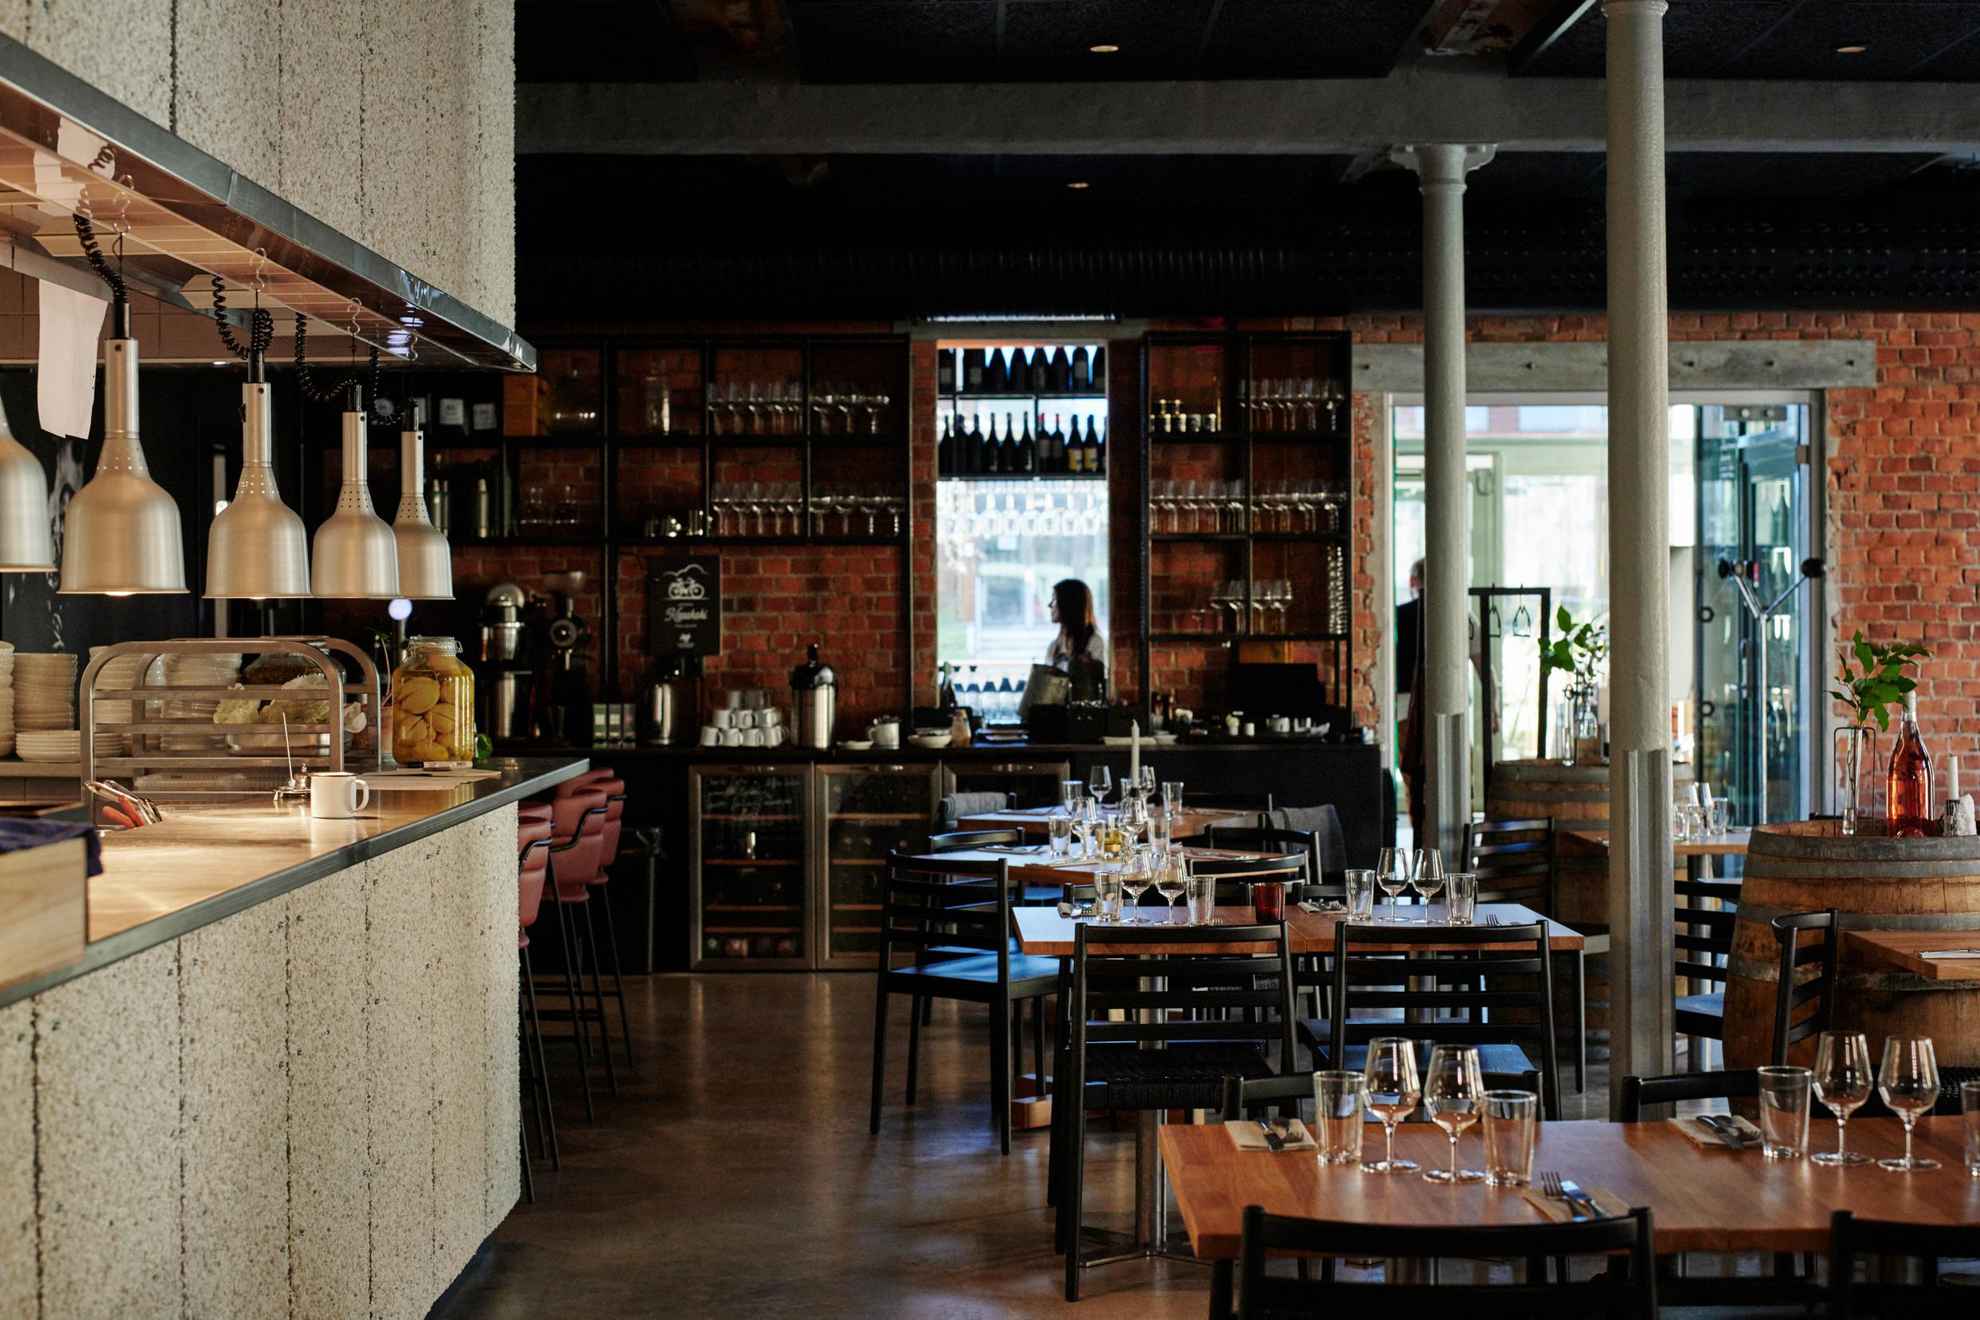 On voit l'intérieur d'un restaurant à vin avec plusieurs tables et sur la gauche de la photo, le bar du restaurant.